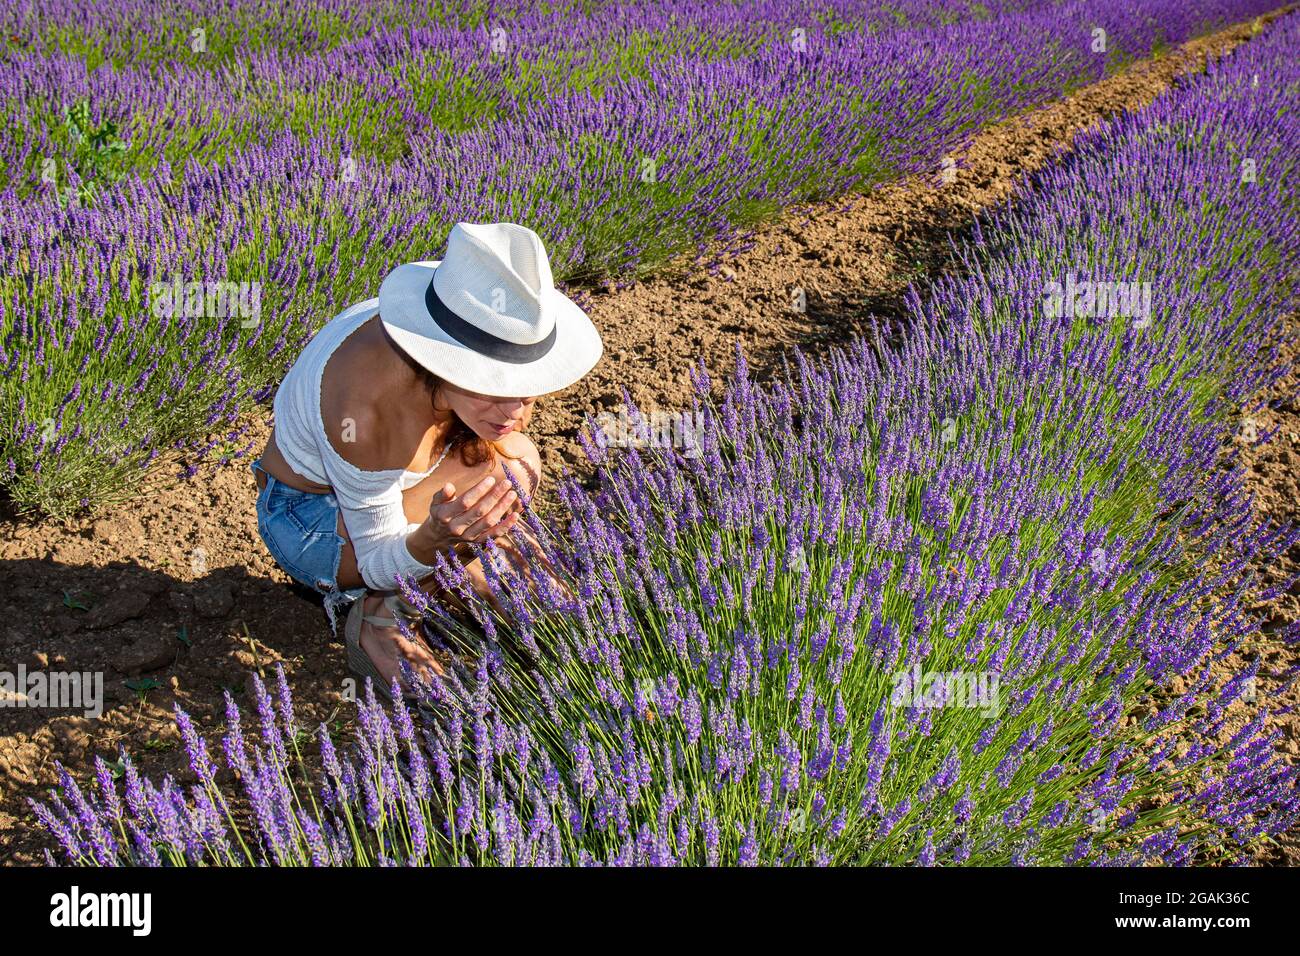 Eine junge Frau in einem blühenden Lavendelfeld. Sie hat sich hingekauert, um die Blumen zu schnuppern. Sommerliche Farben. Naturkonzept. Stockfoto